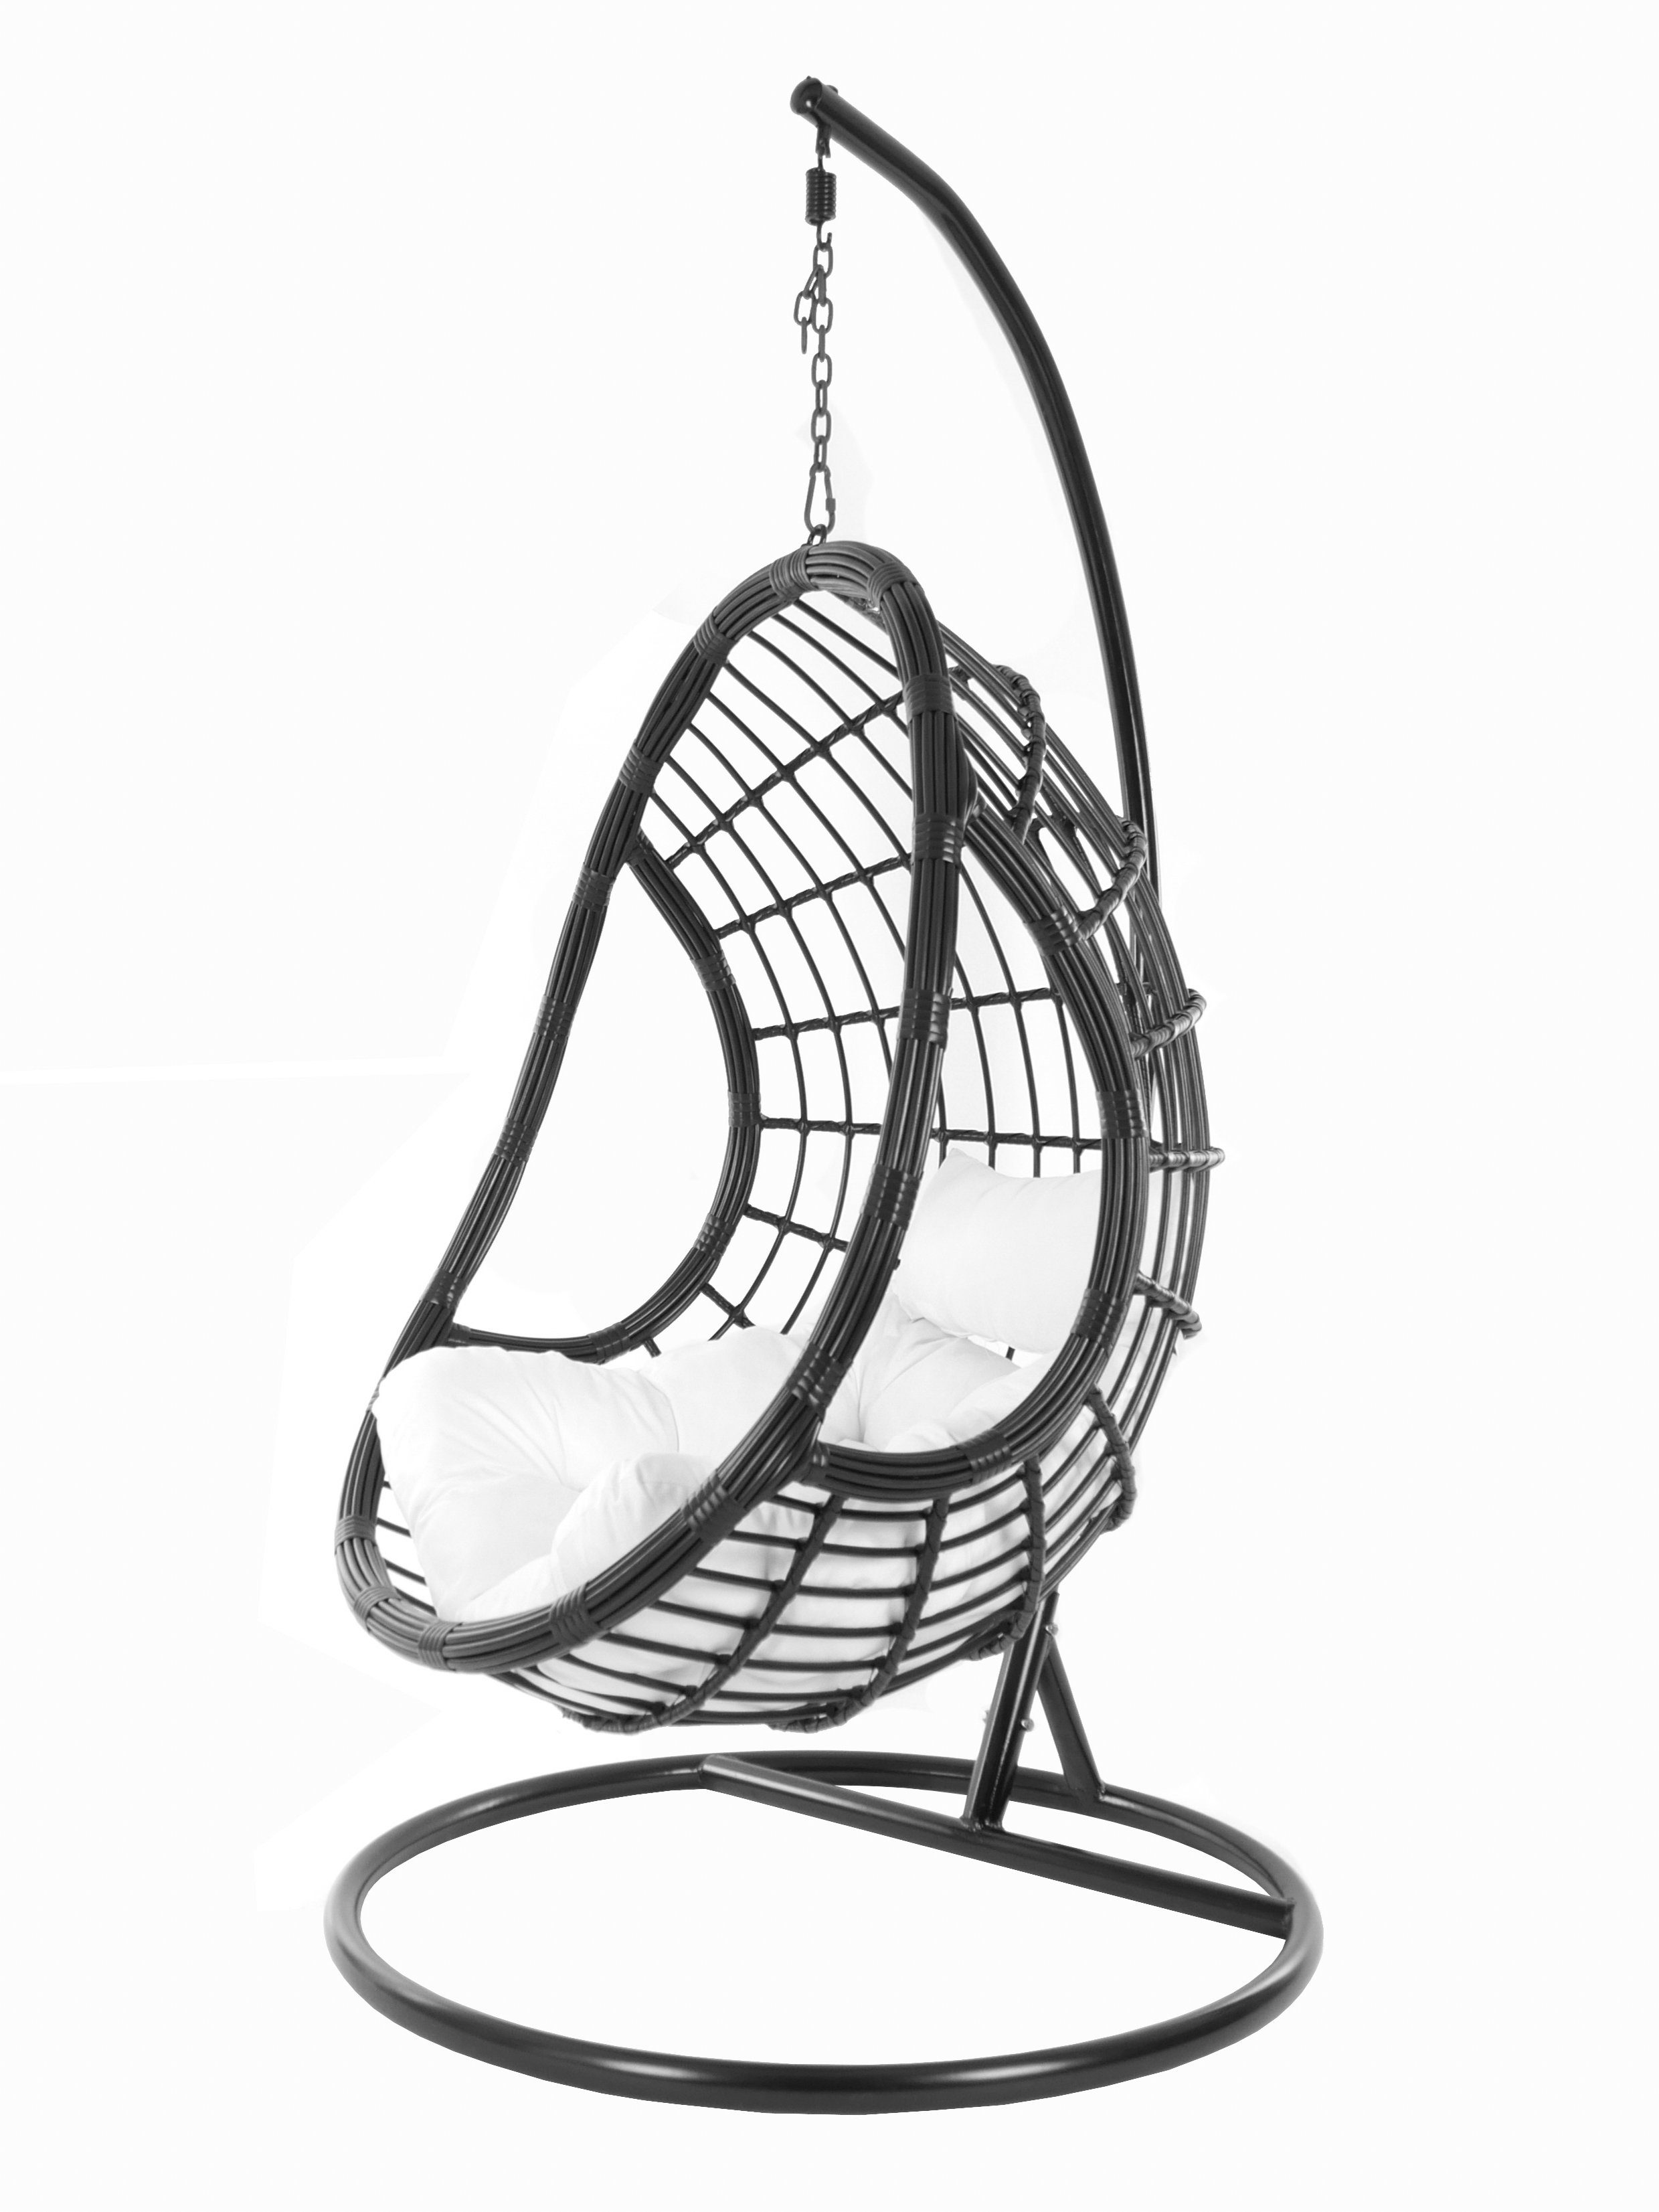 KIDEO Hängesessel PALMANOVA black, Swing Chair, schwarz, Loungemöbel, Hängesessel mit Gestell und Kissen, Schwebesessel, edles Design weiß (1000 snow)